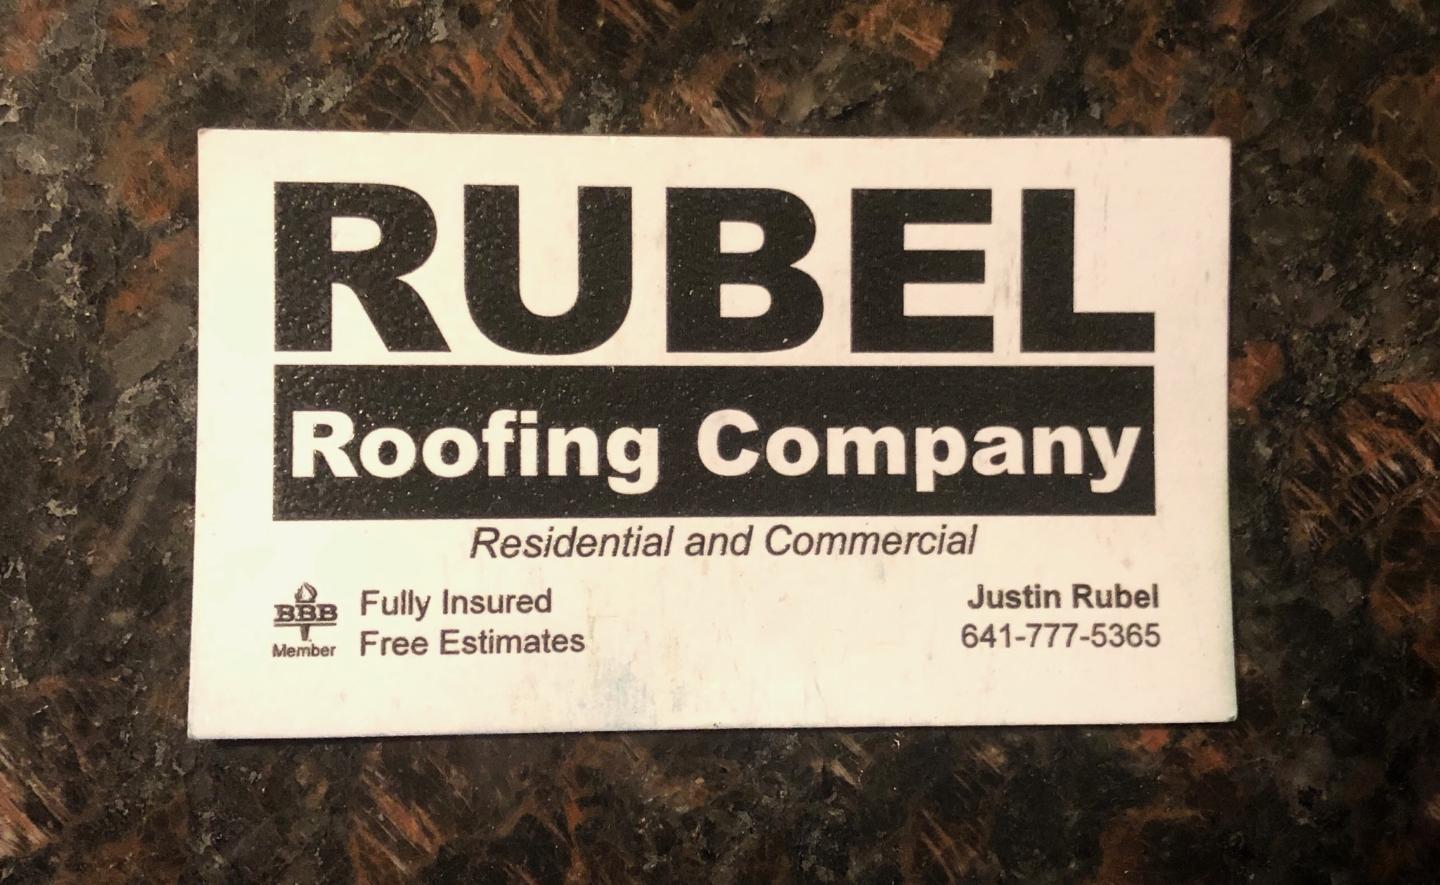 Rubel Roofing Company 302 17th Ave W, Albia Iowa 52531